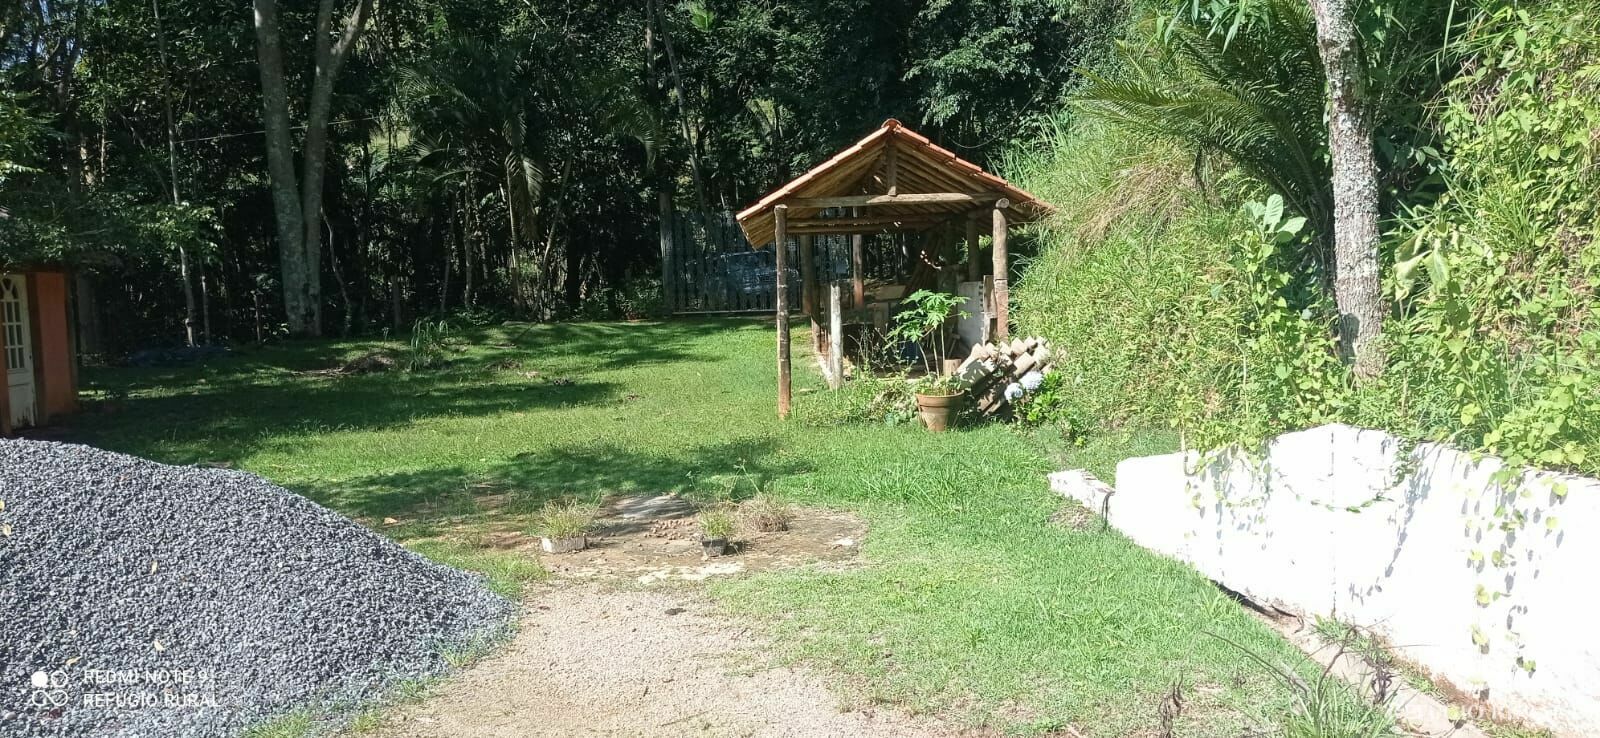 Sítio de 3 ha em São José dos Campos, SP